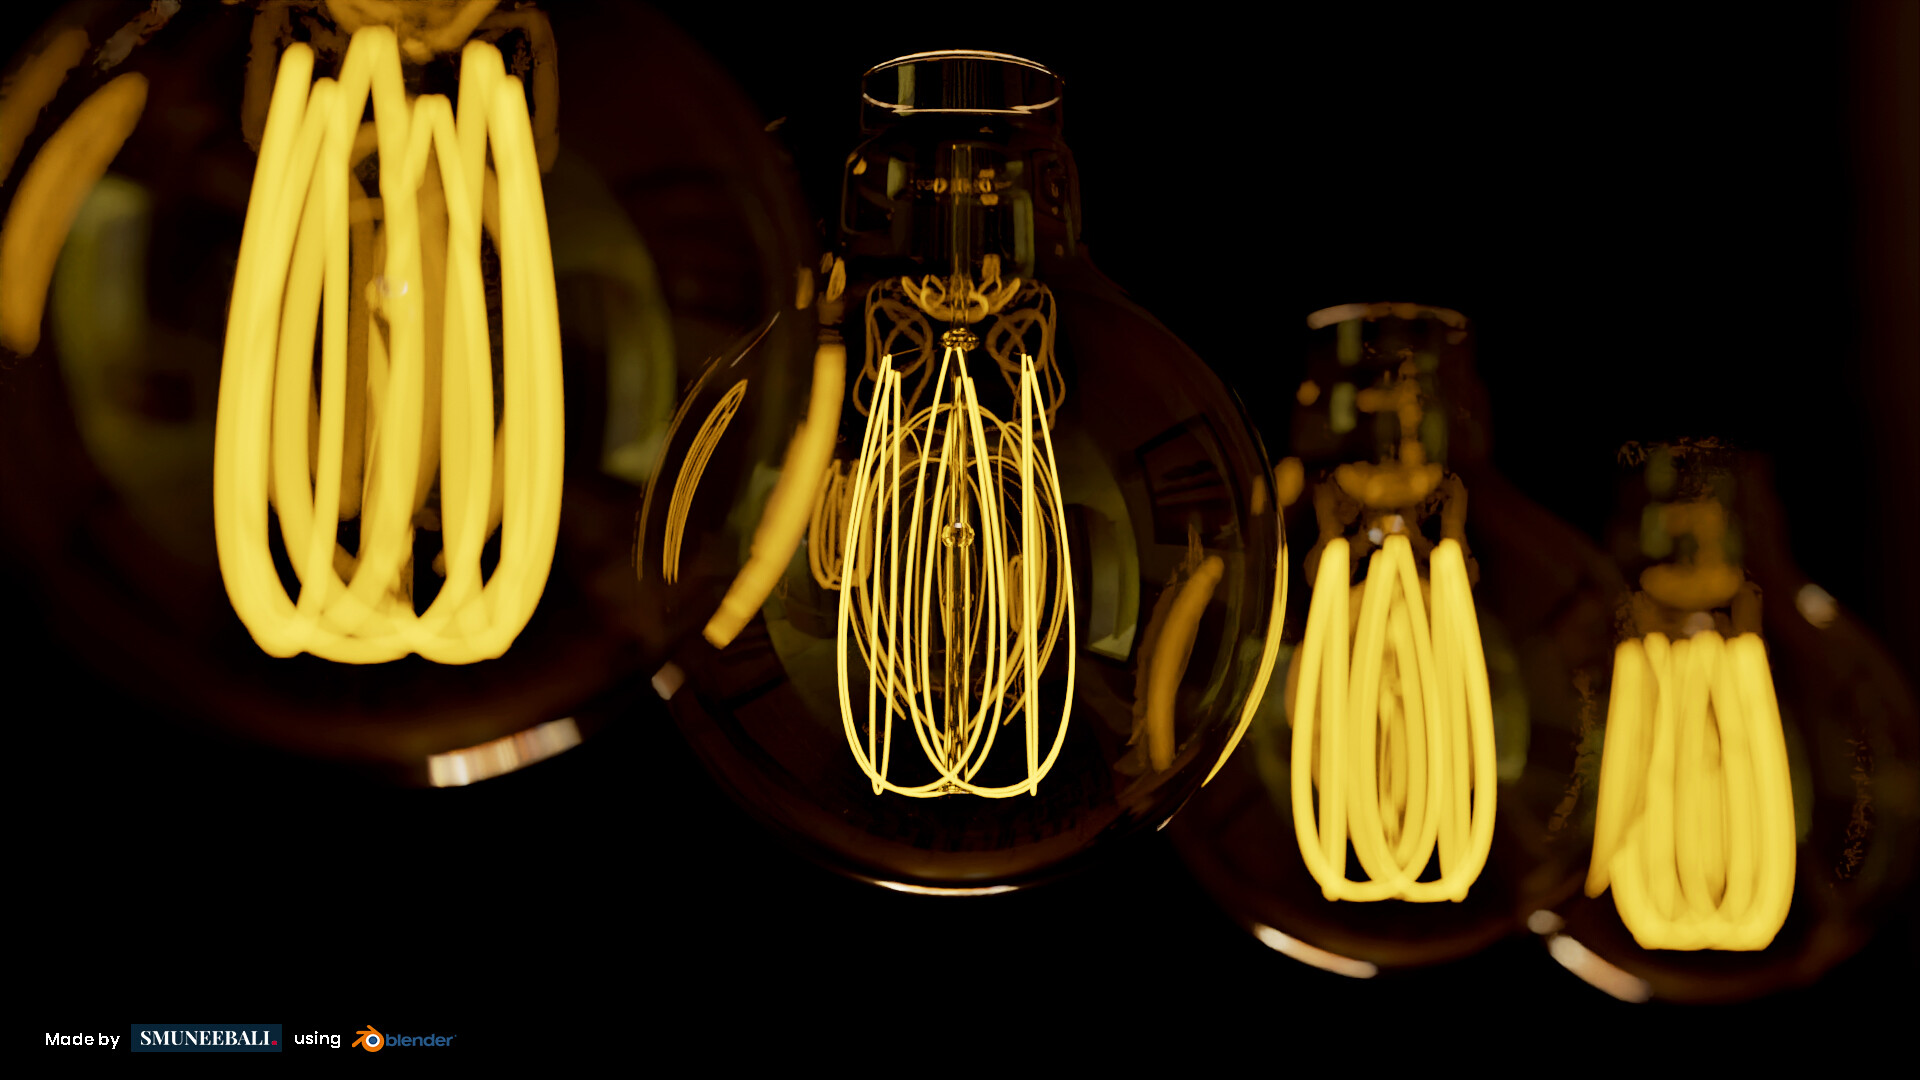 ArtStation - Edison Light Bulbs / Blender 3.2.1 / Cycles Render